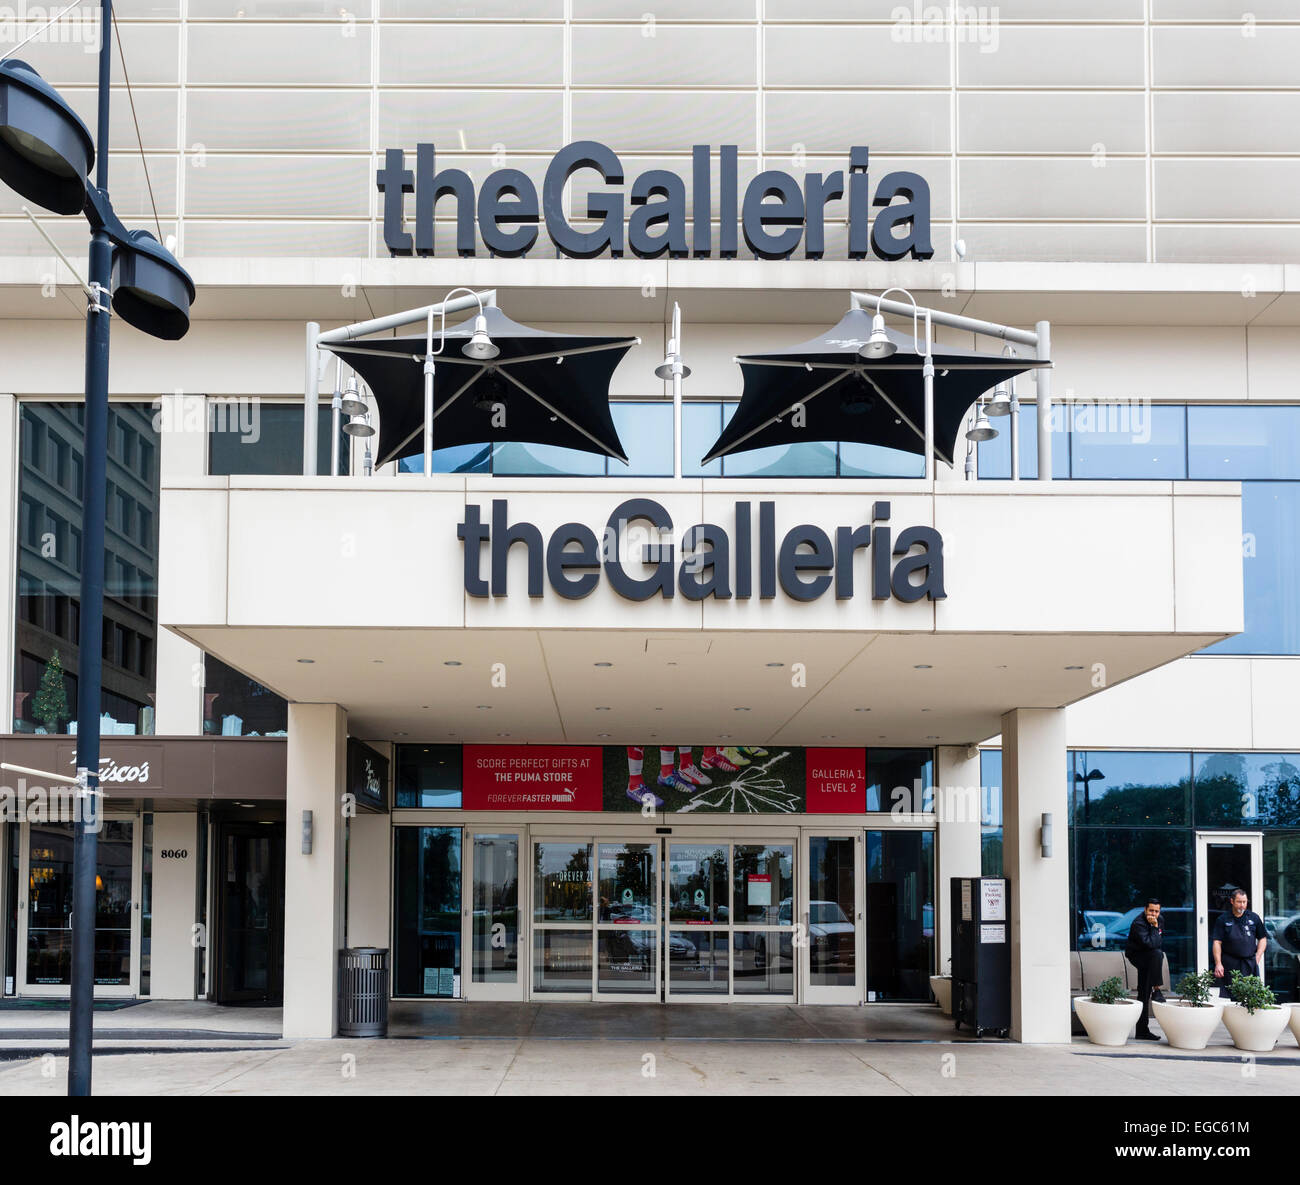 Il galleria shopping mall e il complesso di uffici, Houston, Texas, Stati Uniti d'America Foto Stock